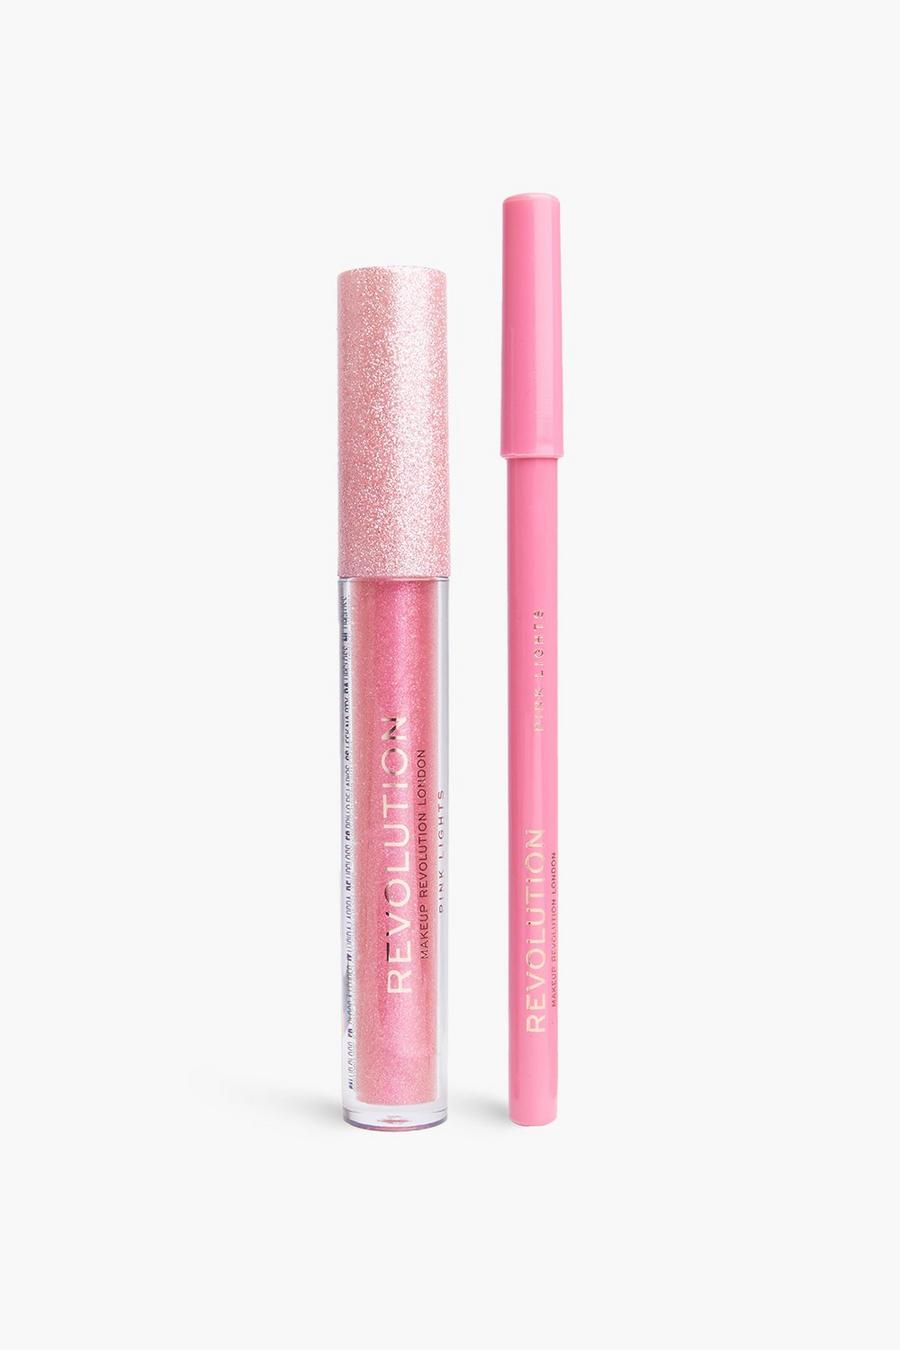 Revolution Ultimate Lights Shimmer Lip Kit, Pink lights image number 1